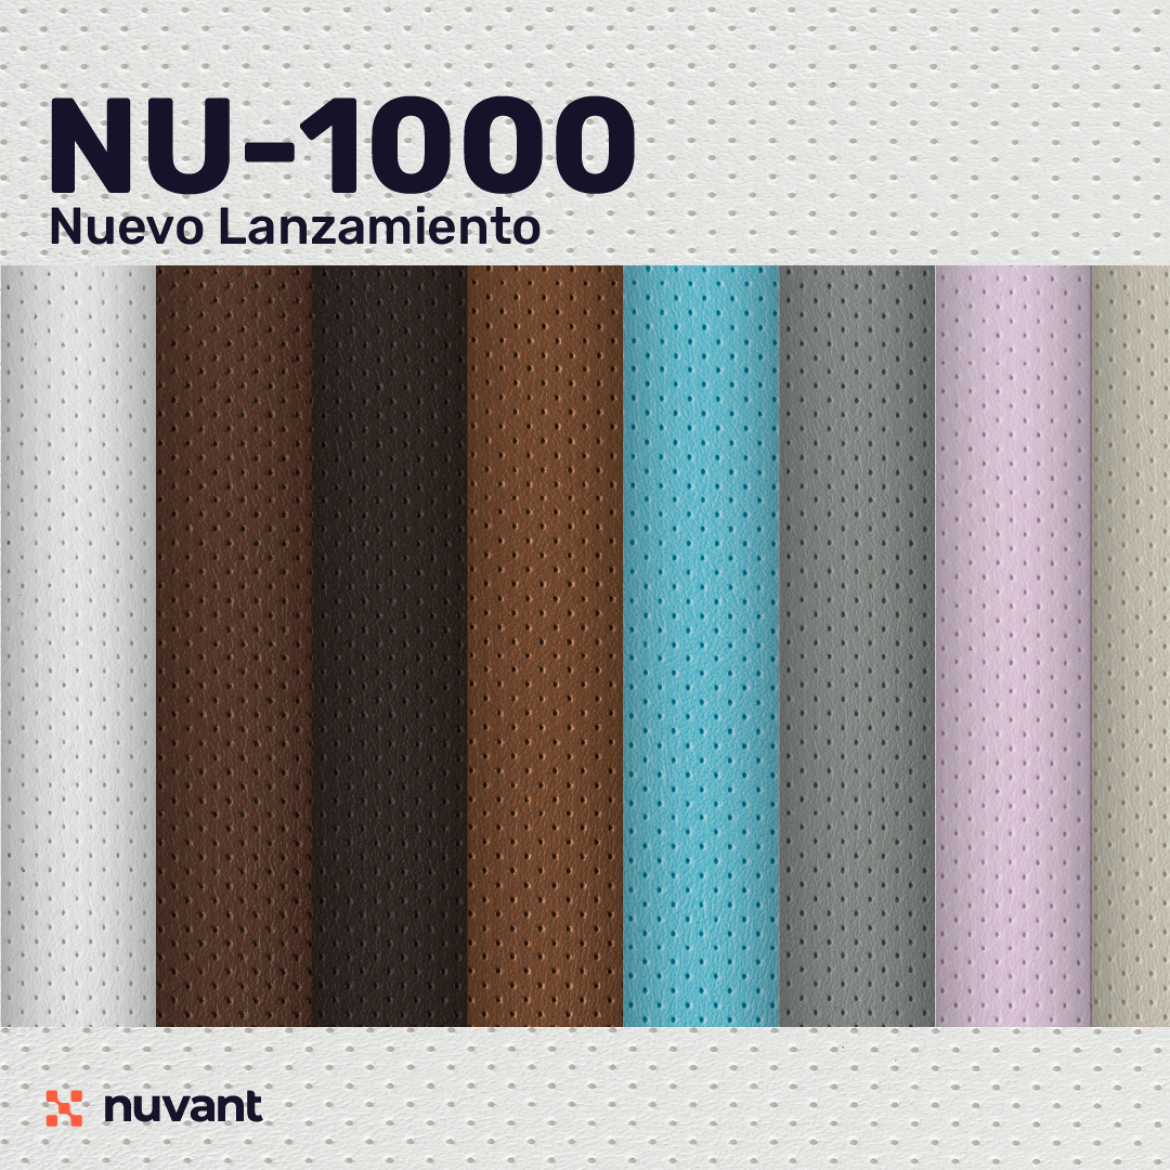 Nueva referencia NU-1000 un grabado más sutil y sofisticado ¡Conocela!